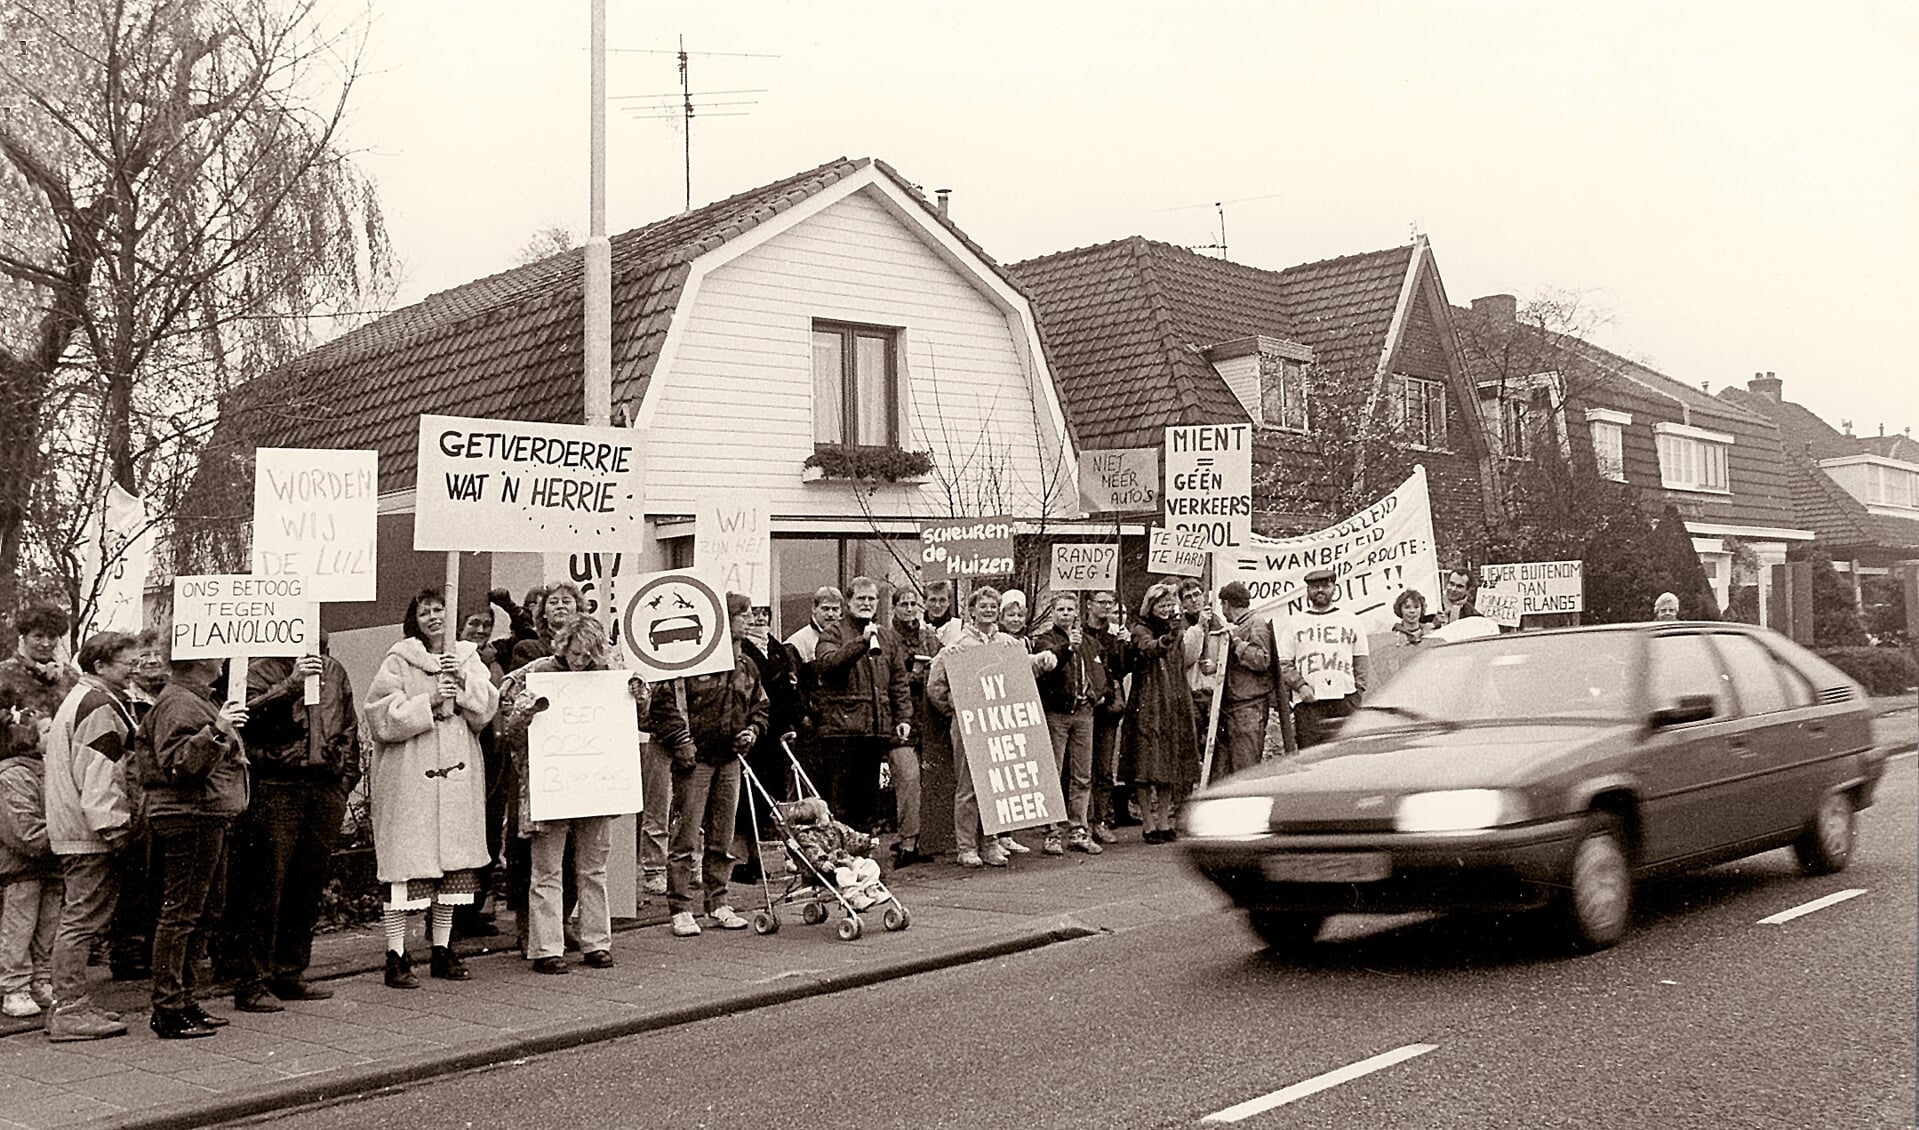 1993, Ruiterweg. Protest tegen verkeersplannen in het centrum.